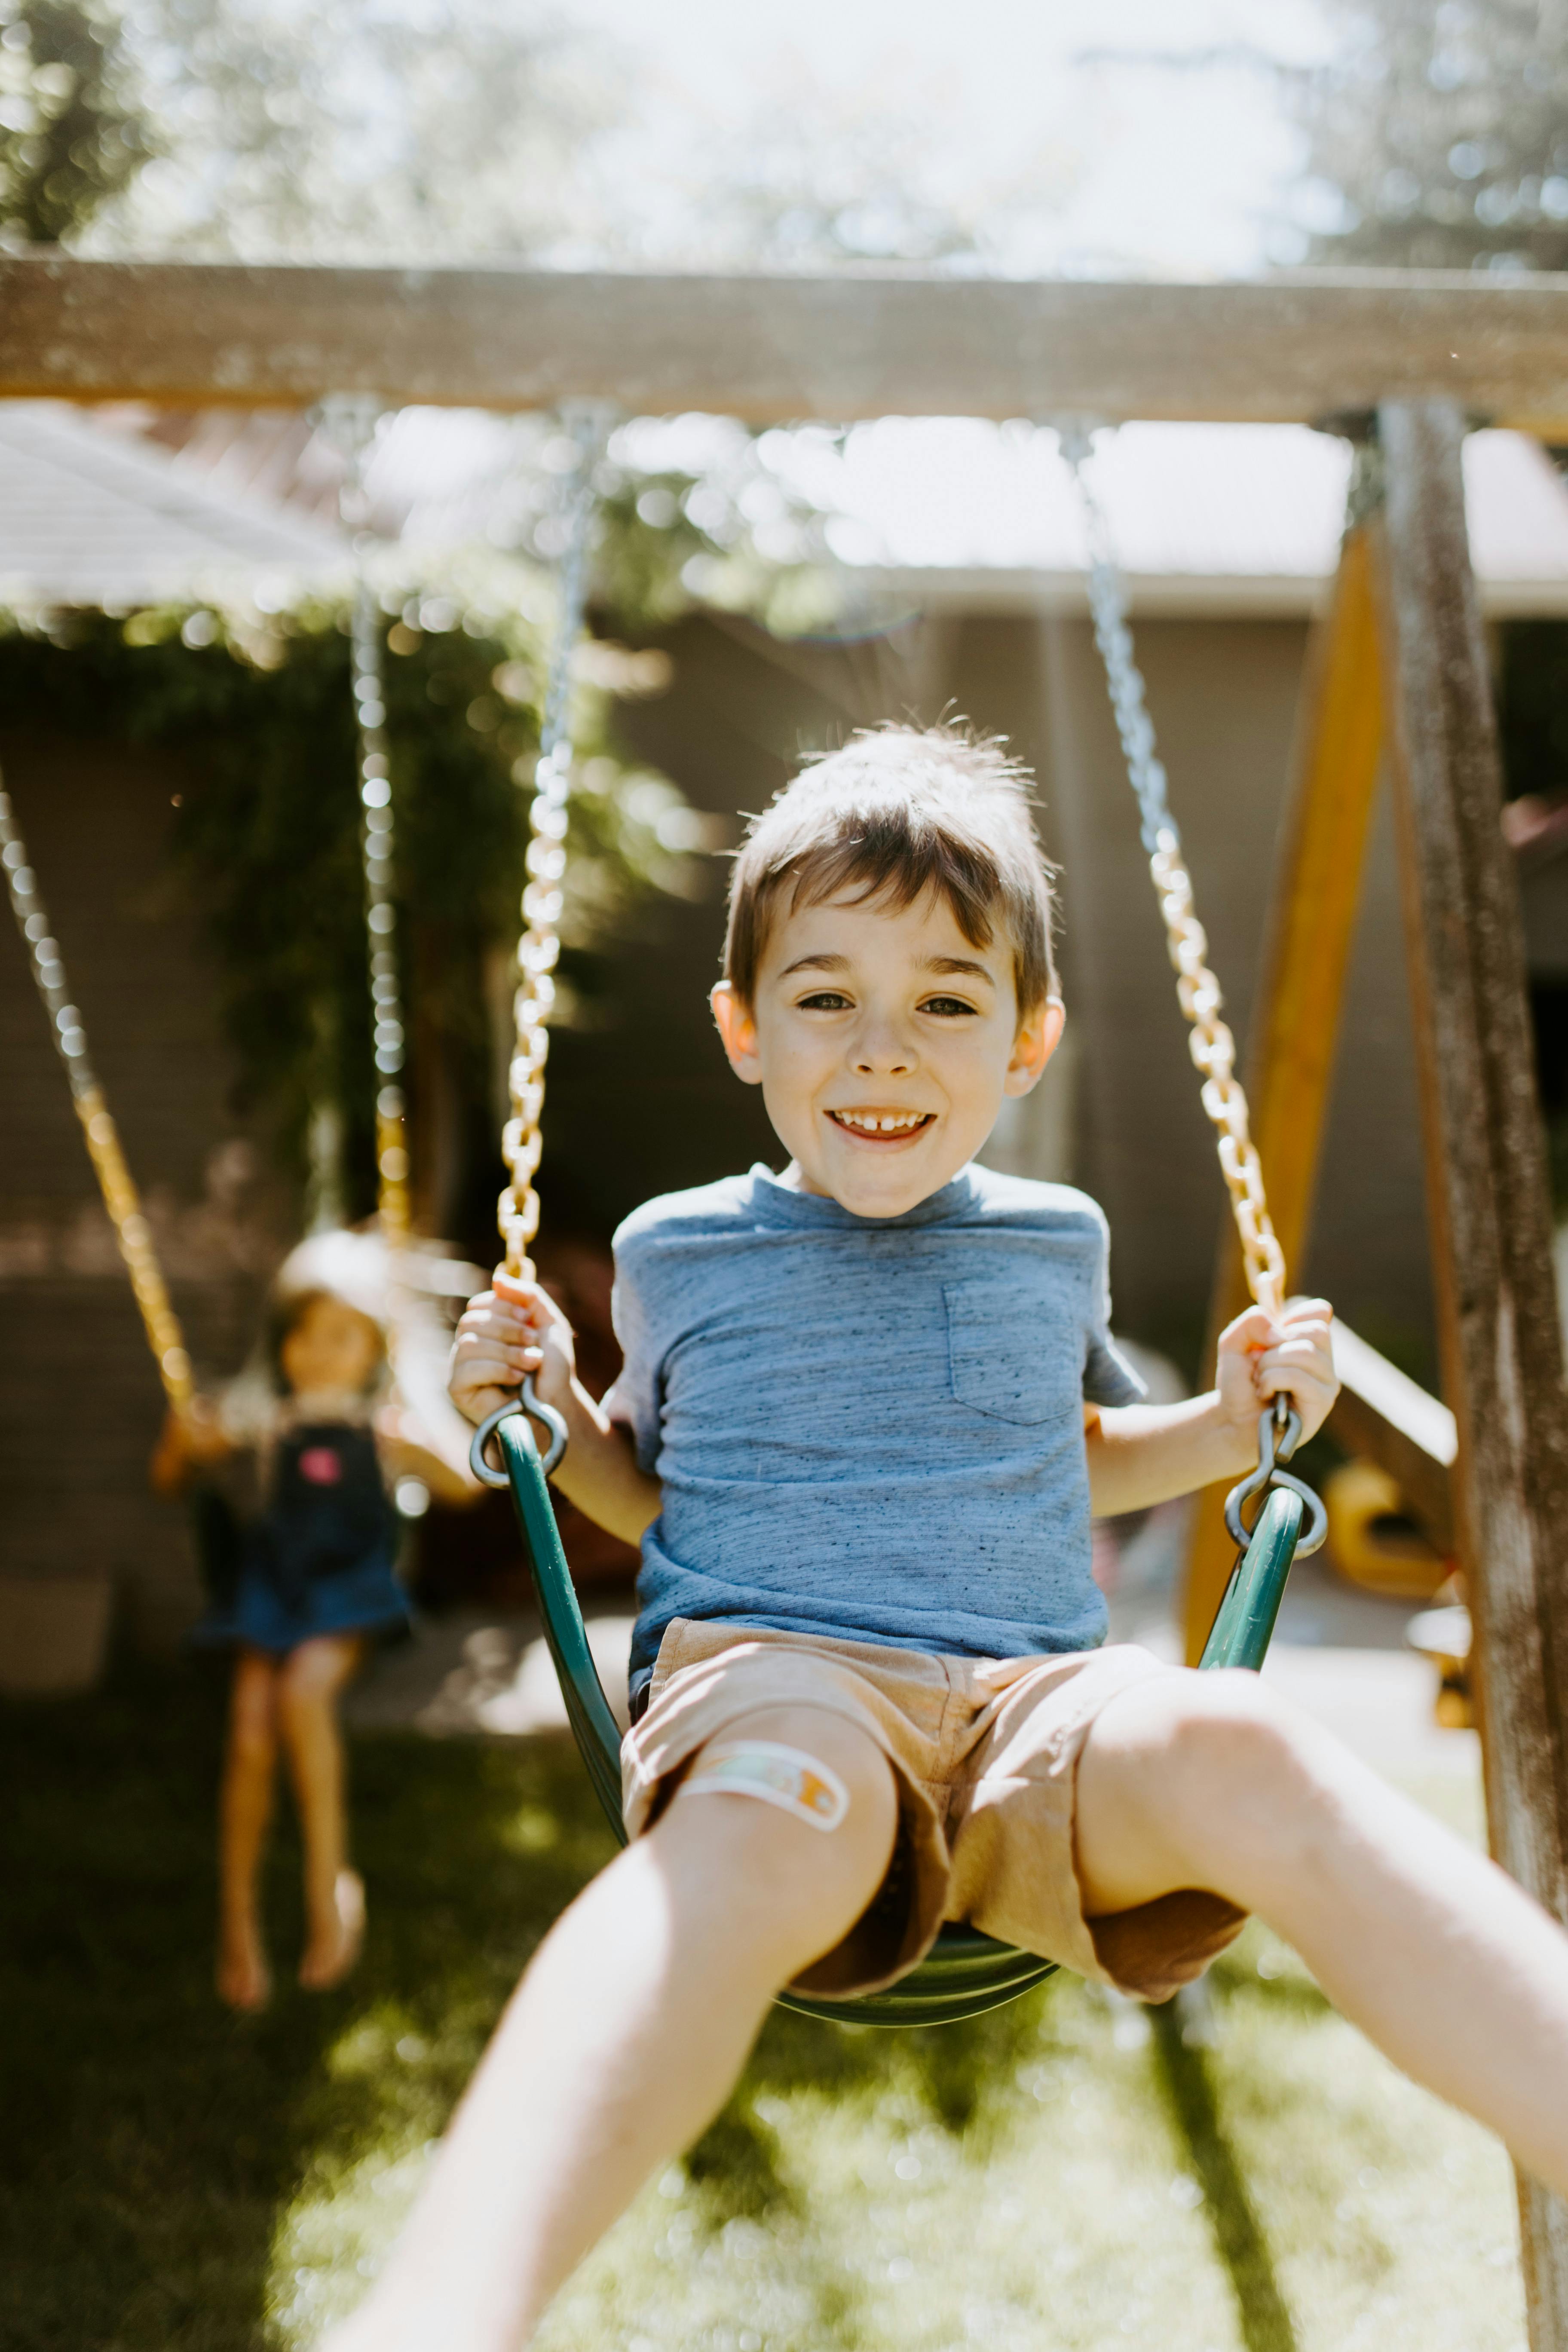 Happy little boy on a swing | Source: Pexels